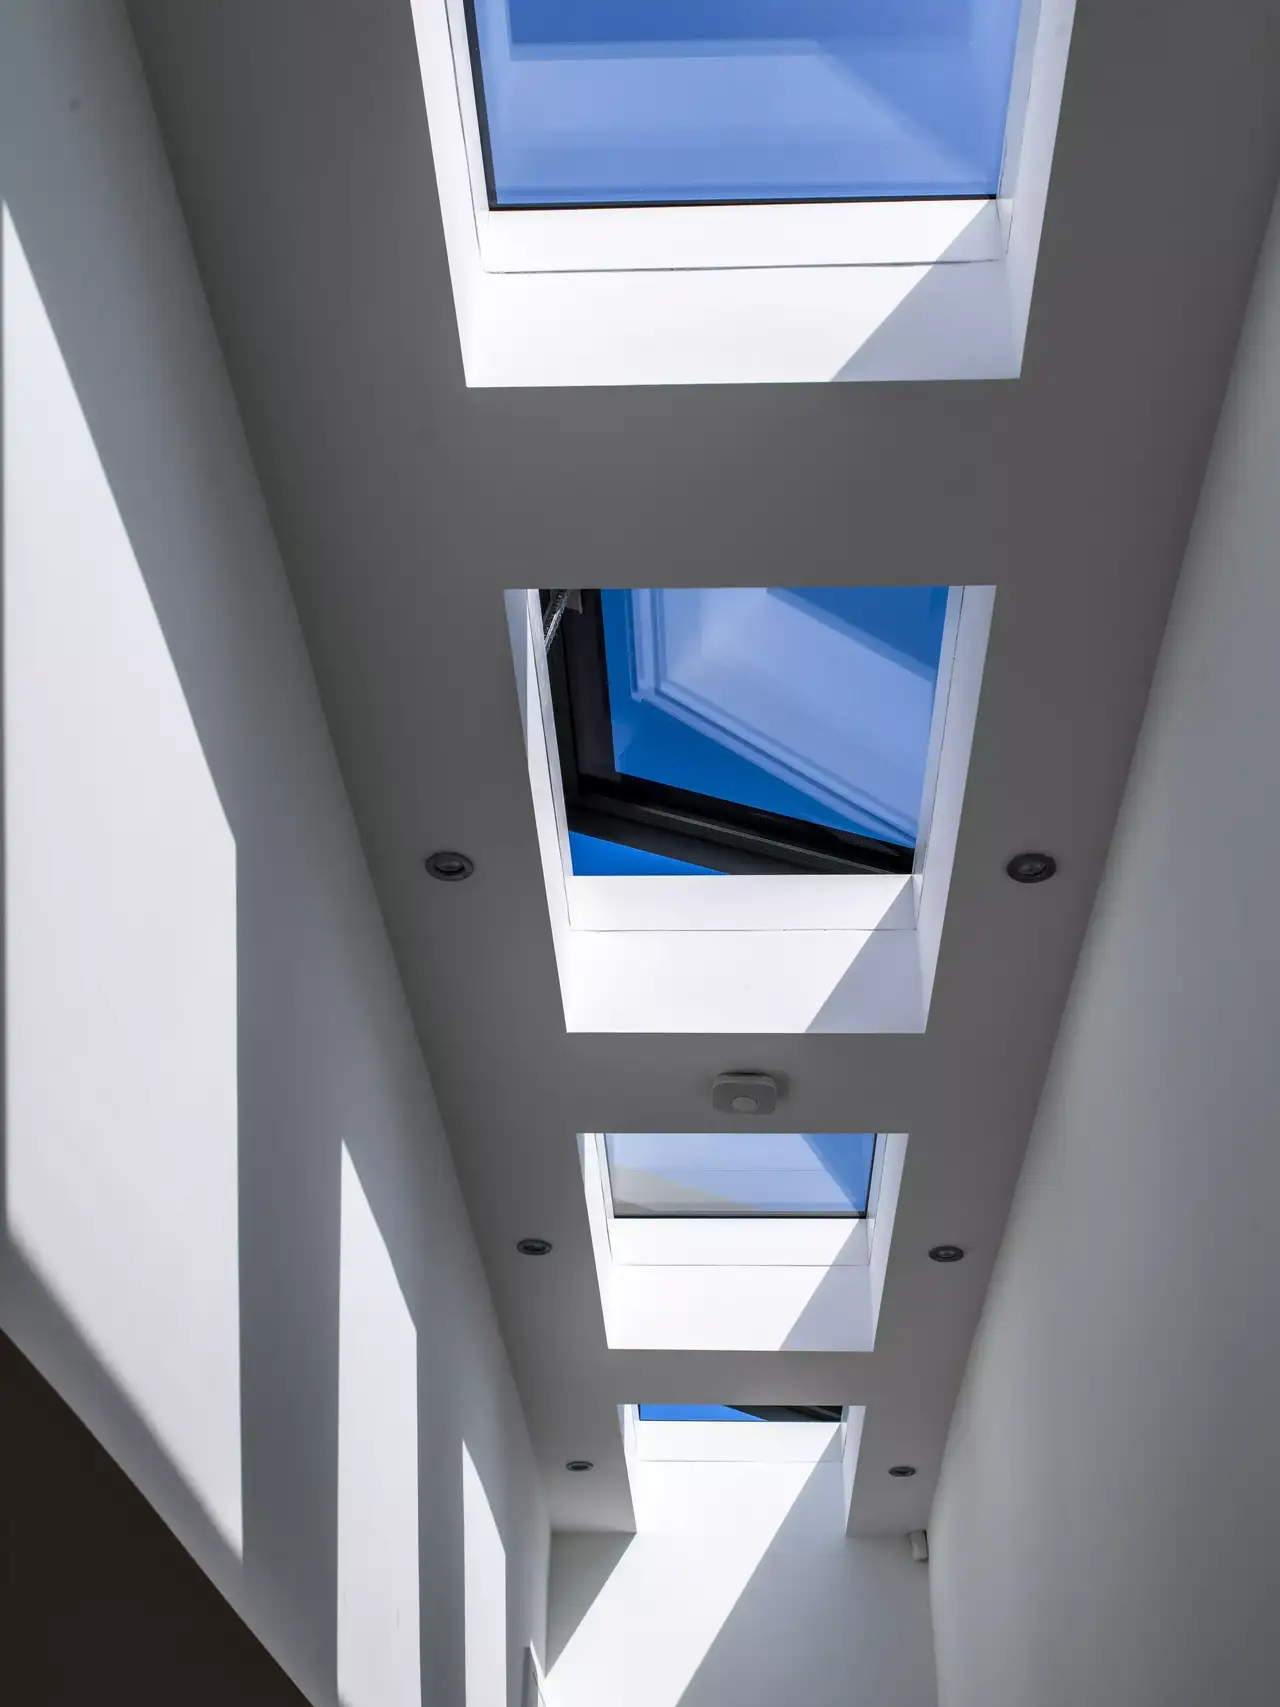 Moderner Flur mit natürlichem Licht von mehreren VELUX Dachflächenfenstern.